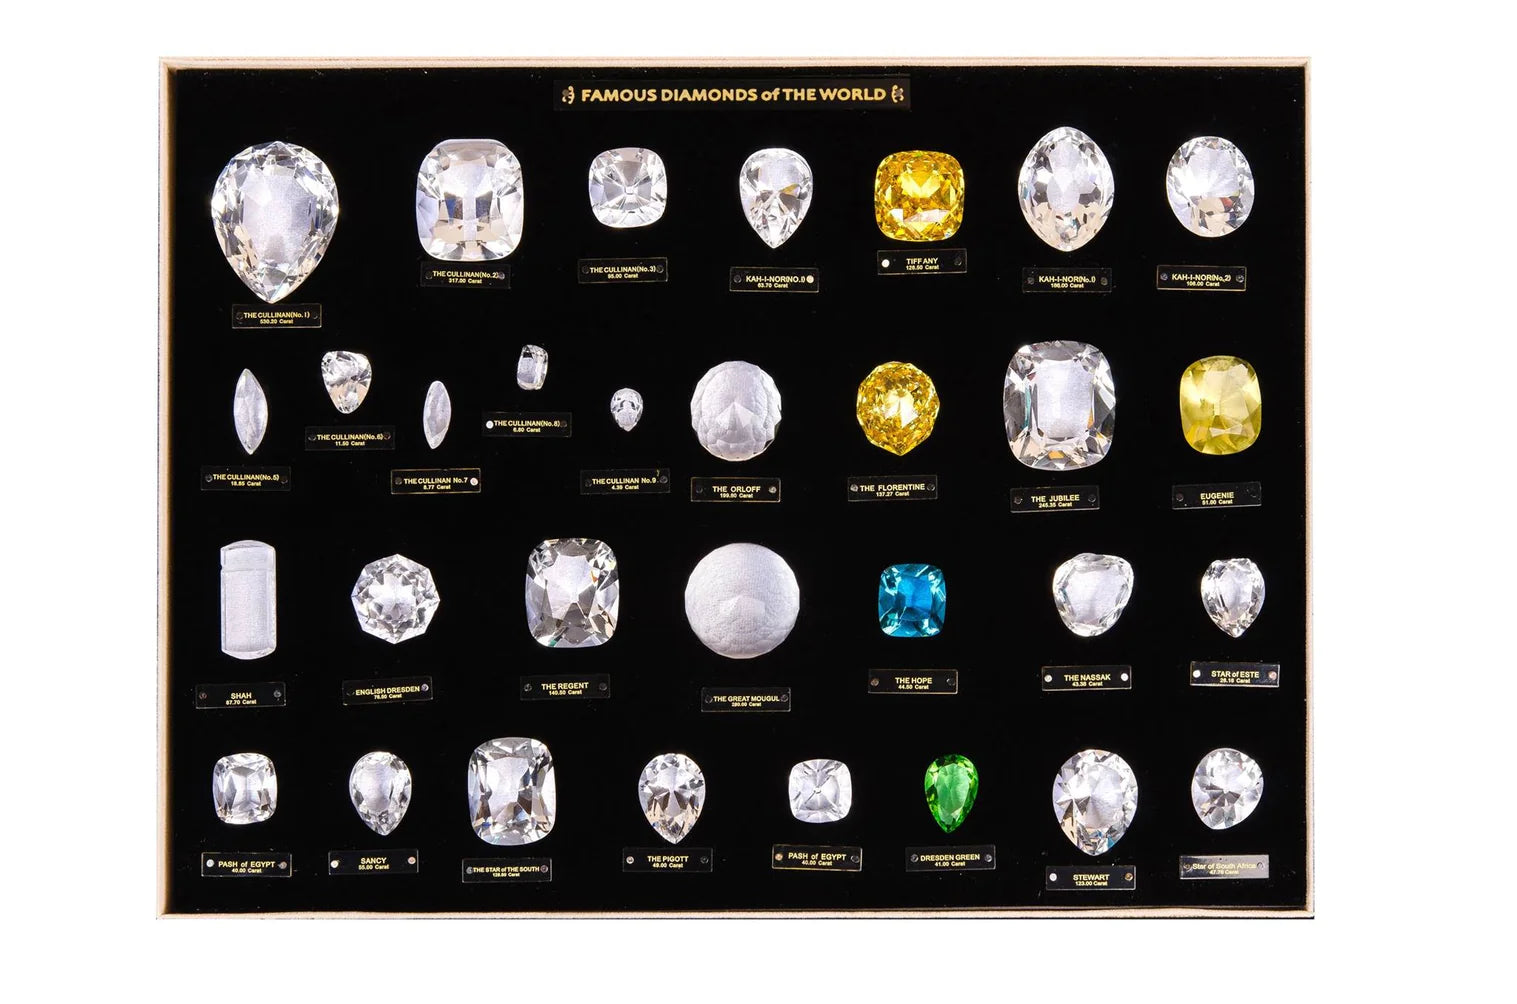 Eksklusiv samling af kopier af verdens berømte diamanter